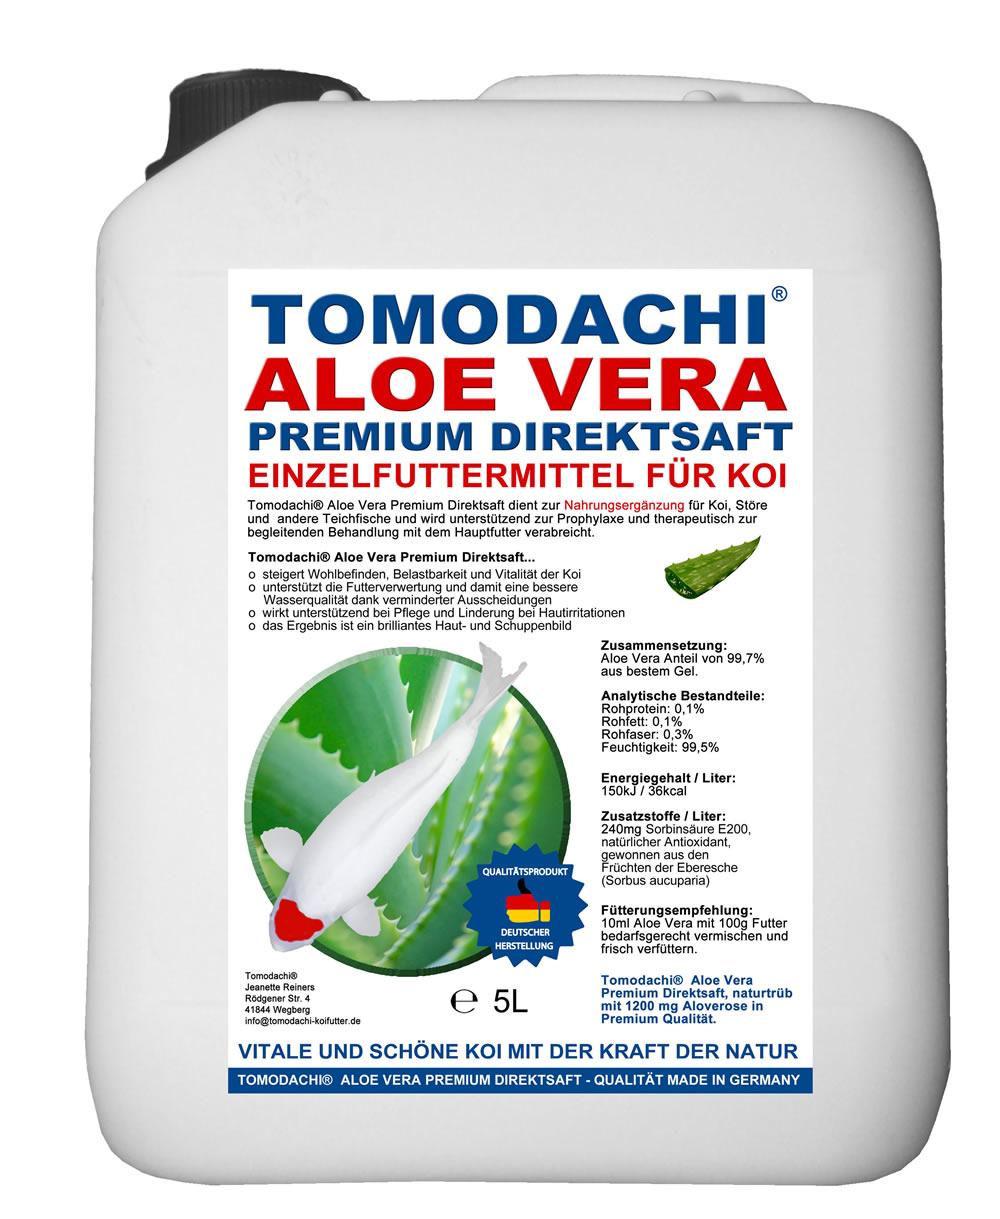 Tomodachi Aloe Vera Premium Direktsaft für Koi, ideal für die Anreicherung des Koifutters im Frühjahr und Herbst - Immunschutz und Vitalität für unsere Koi